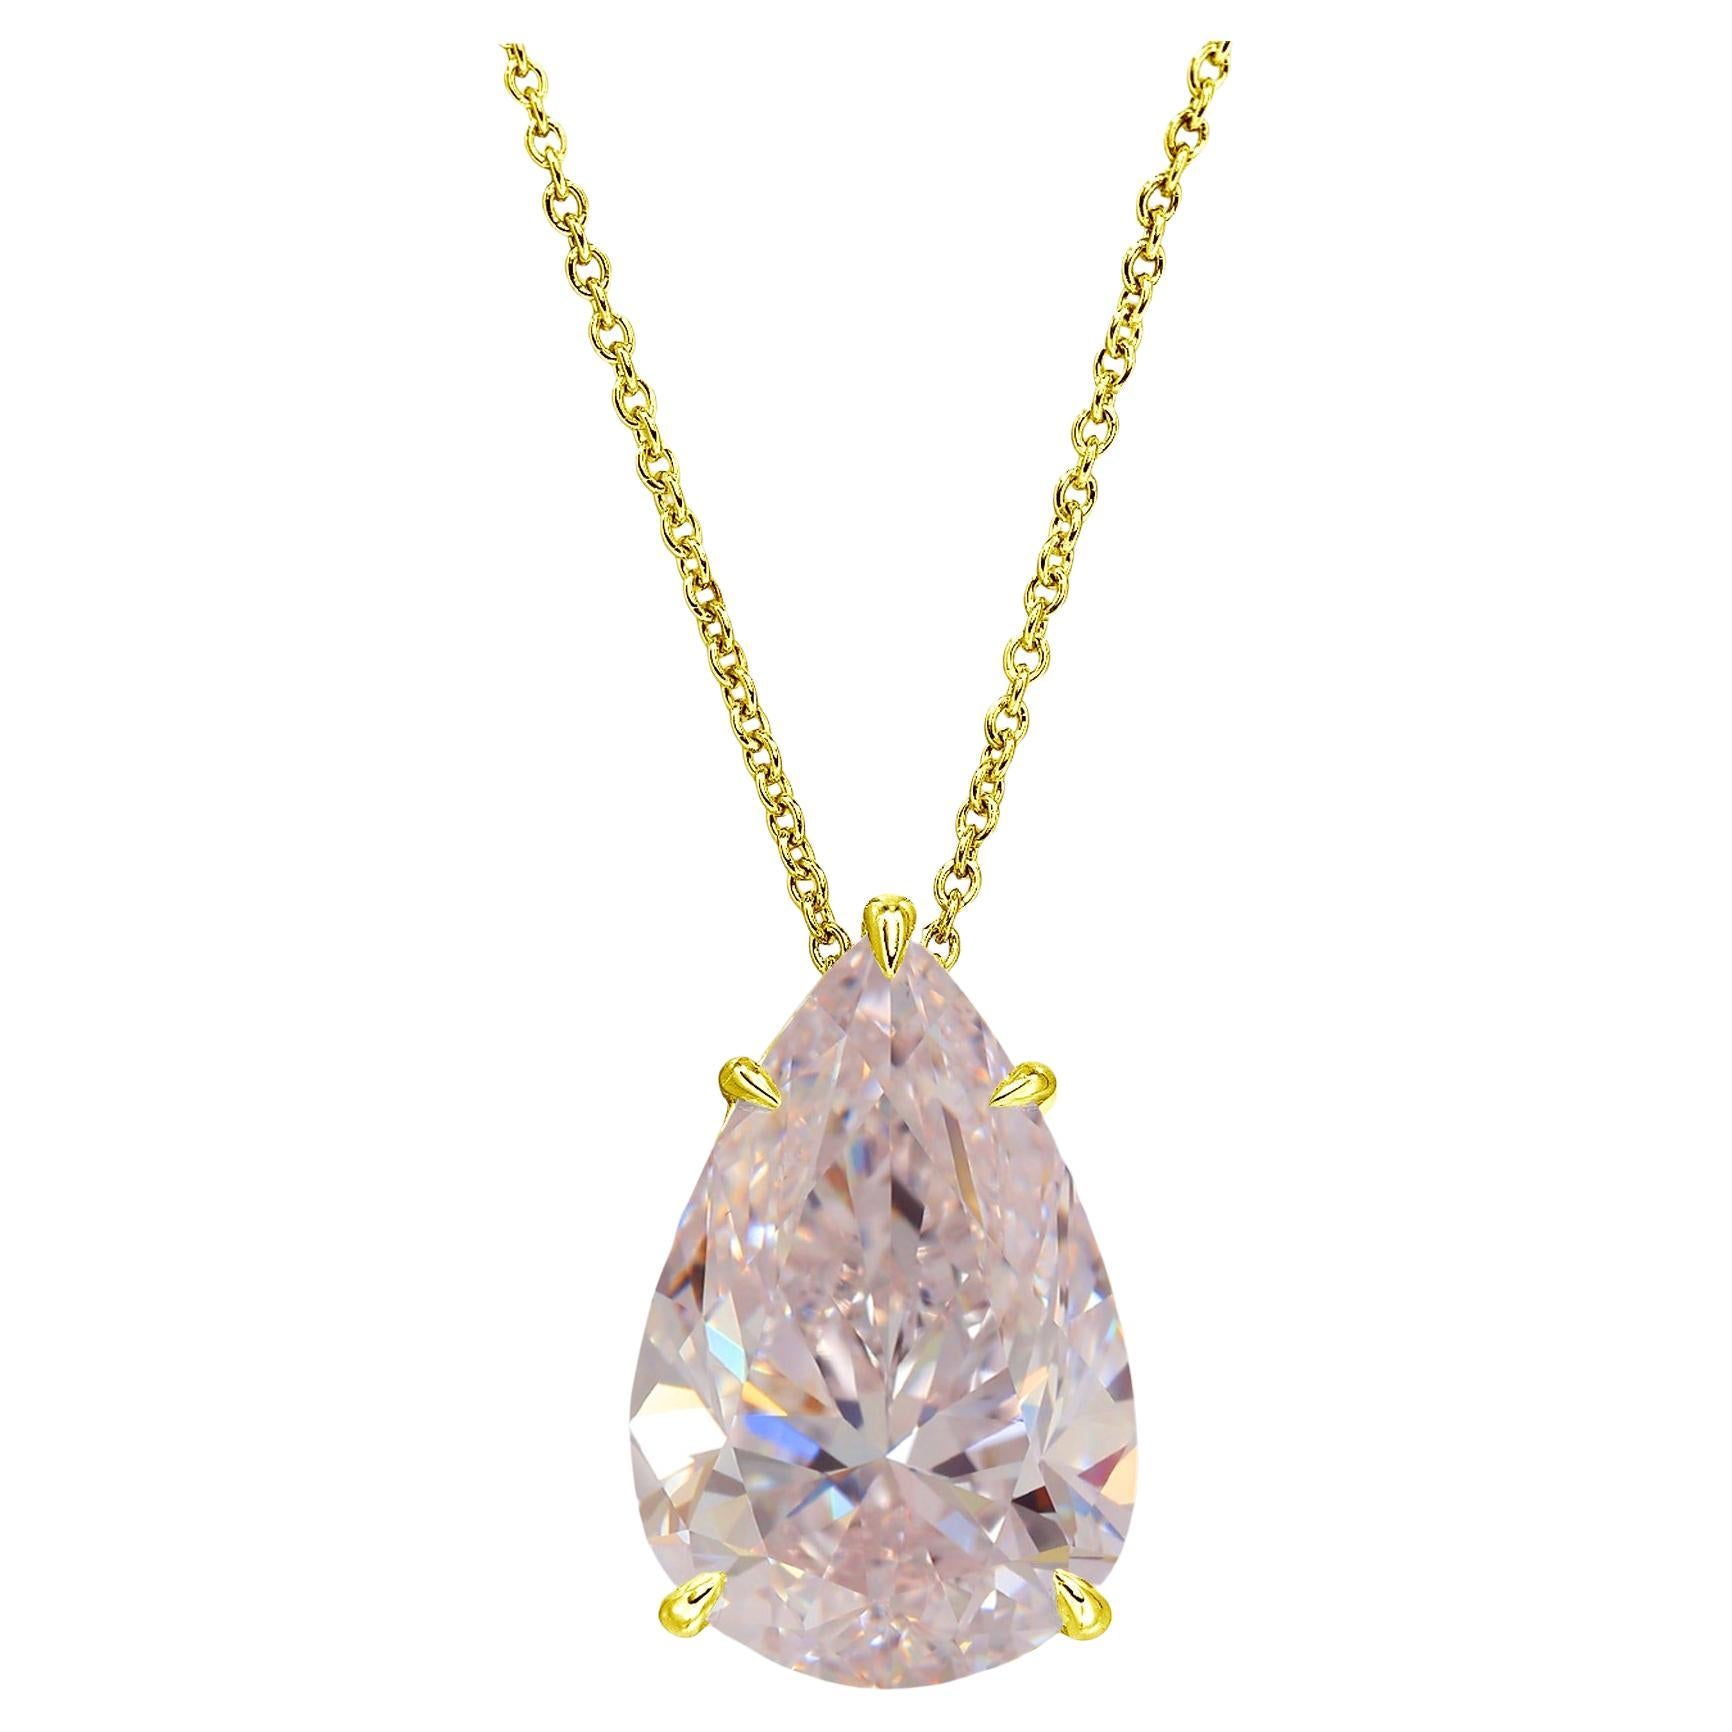 GIA Certified 10 Carat Flawless Pear Cut Fancy Intense Pink Diamond Pendant